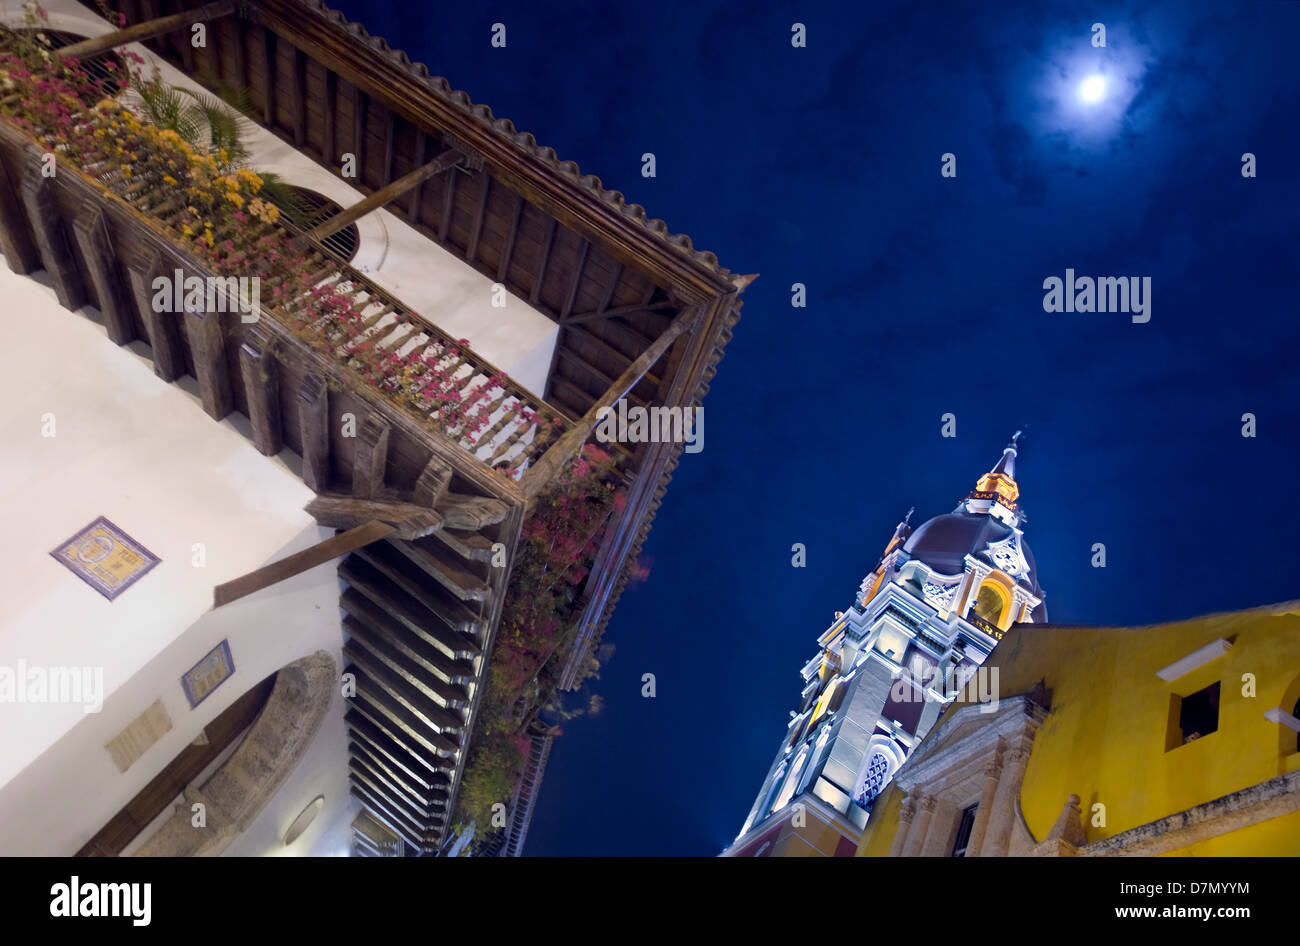 La Catedral y el típico balcón, casco antiguo de la ciudad, Cartagena de Indias, Colombia Foto de stock